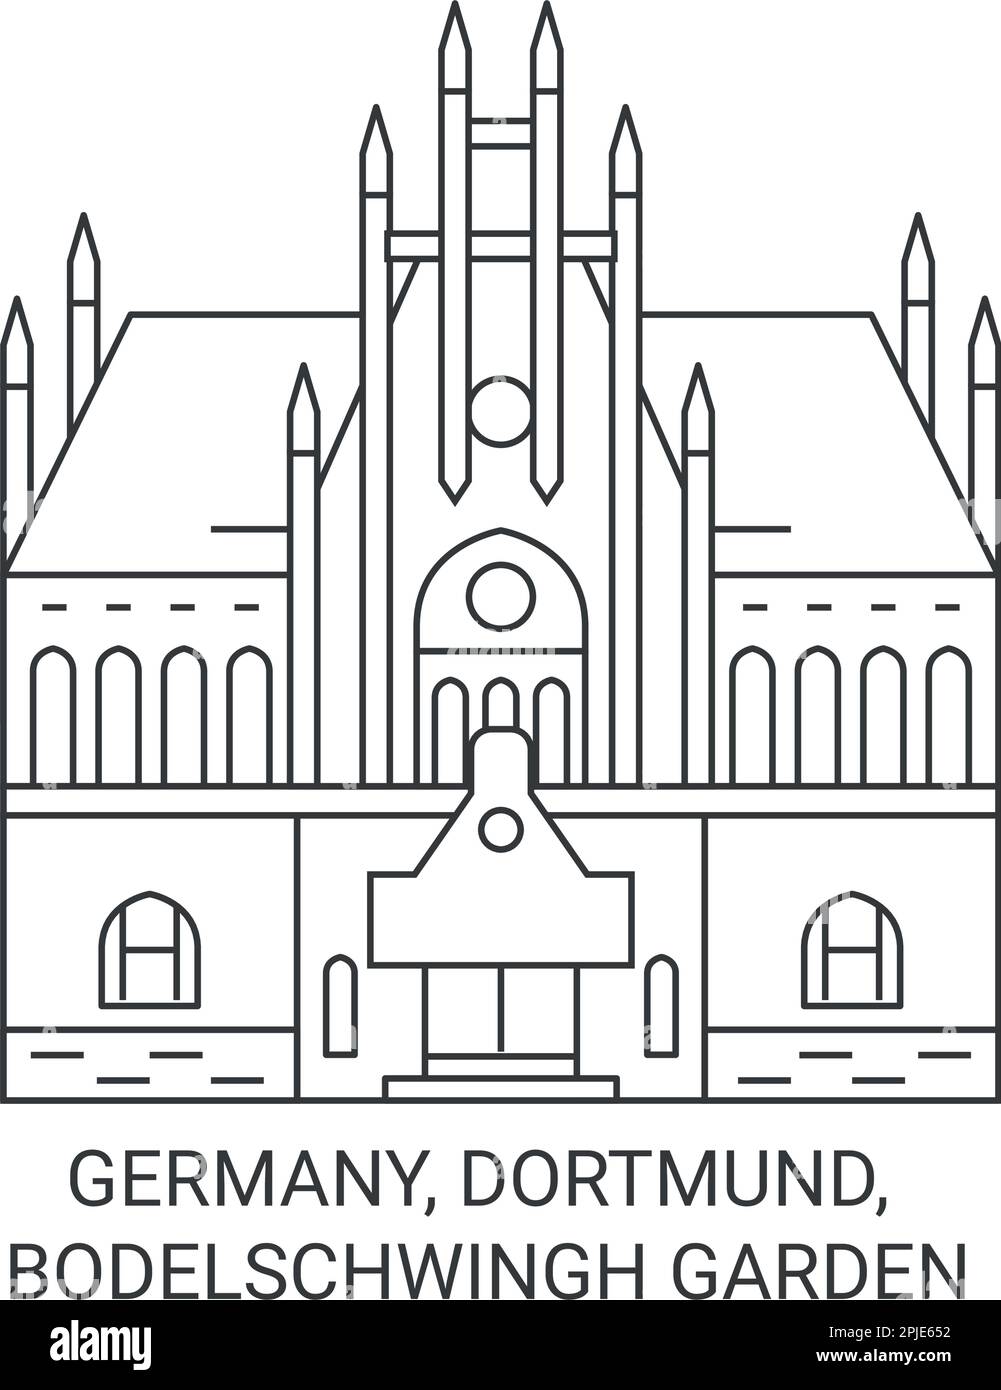 Allemagne, Dortmund, Bodelschwingh Garden Voyage illustration vectorielle Illustration de Vecteur